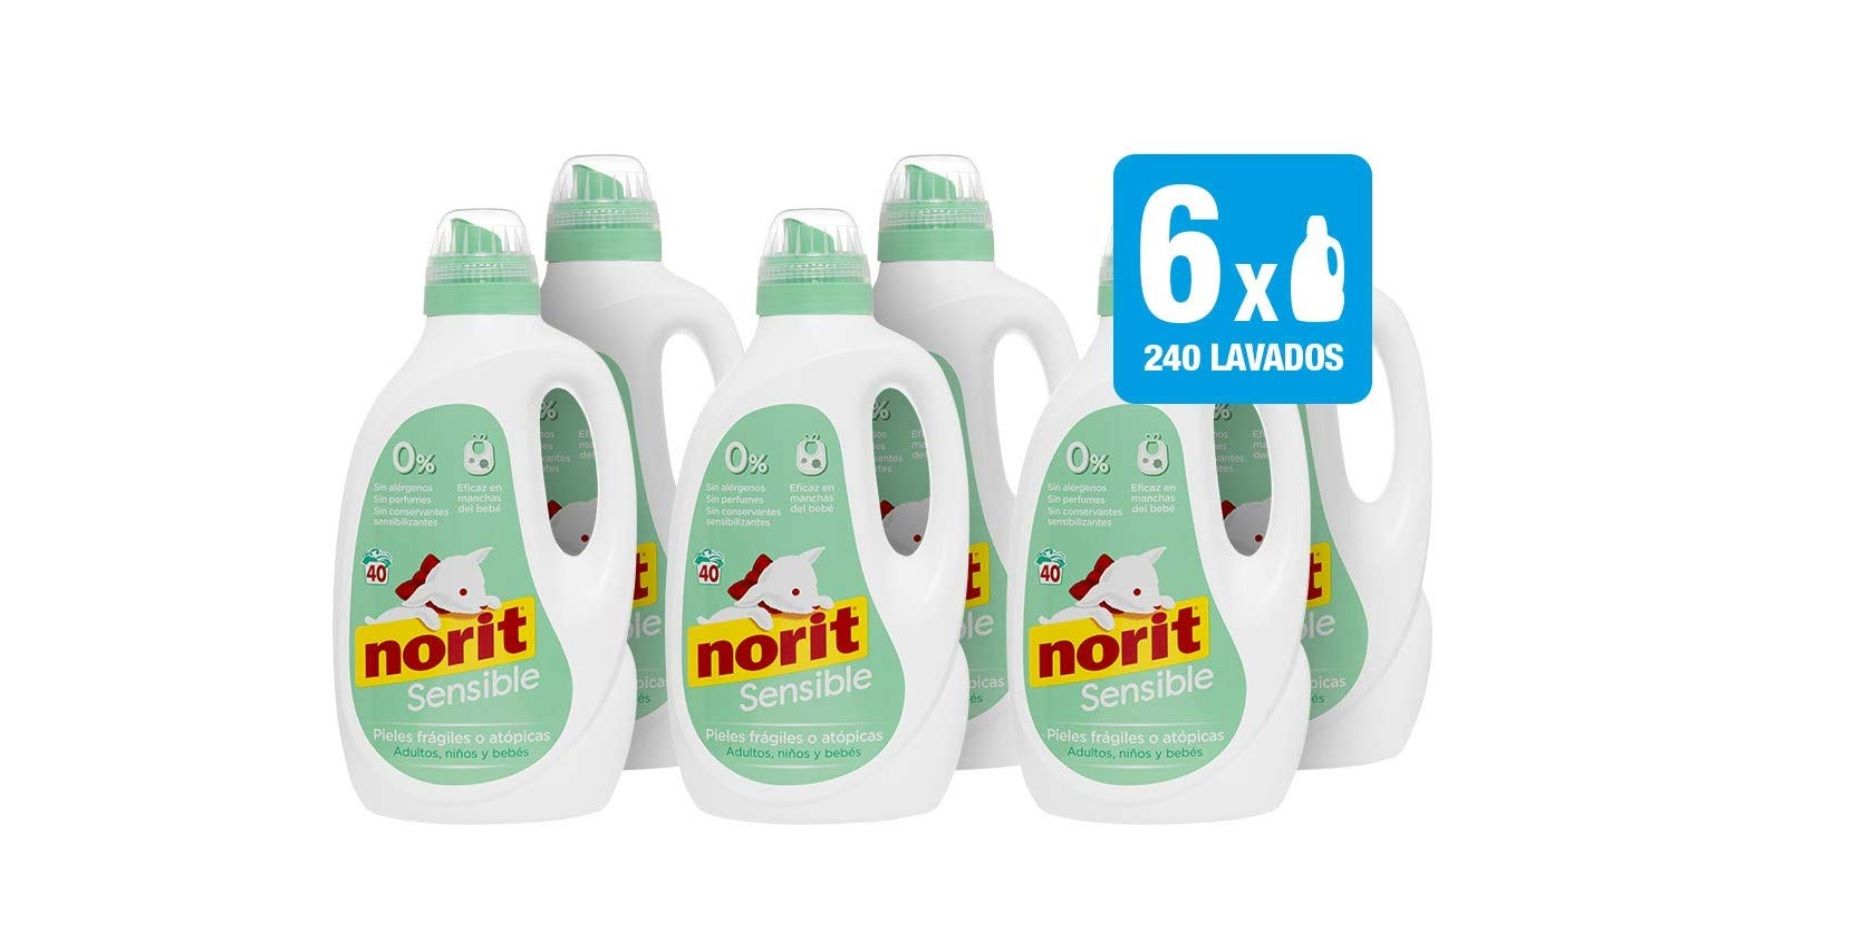 Pack de 6 detergentes Norit especial sensibles por sólo 25,92€ al tramitar